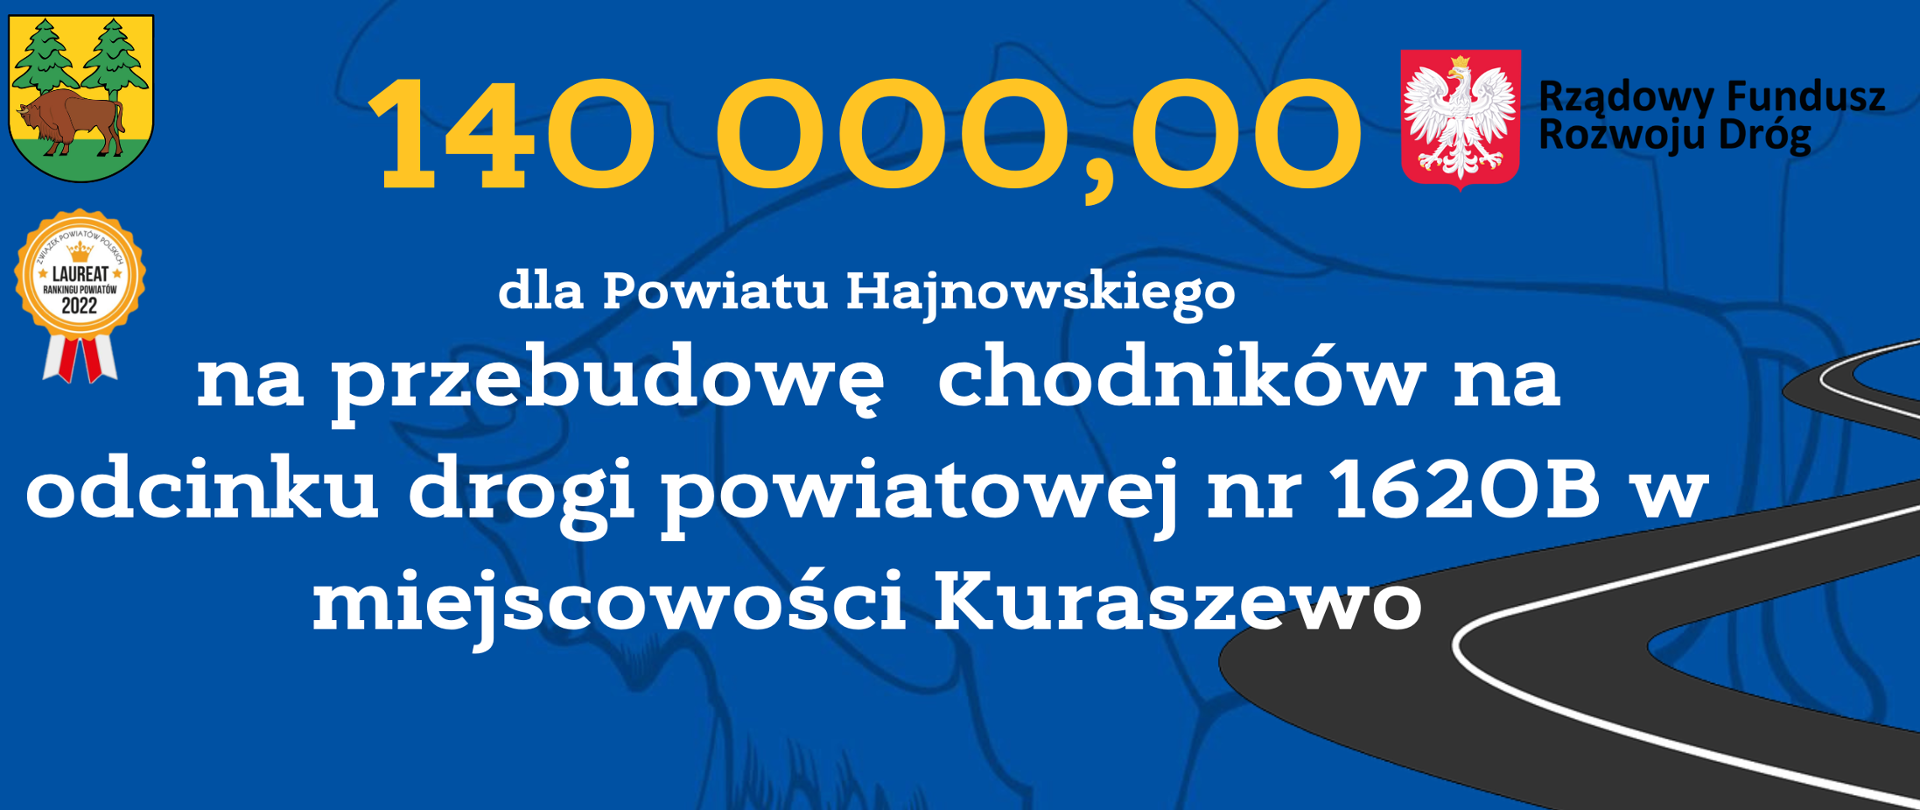 140 000,00
dla Powiatu Hajnowskiego
na przebudowę chodników na odcinku drogi powiatowej nr 1620B w miejscowości Kuraszewo